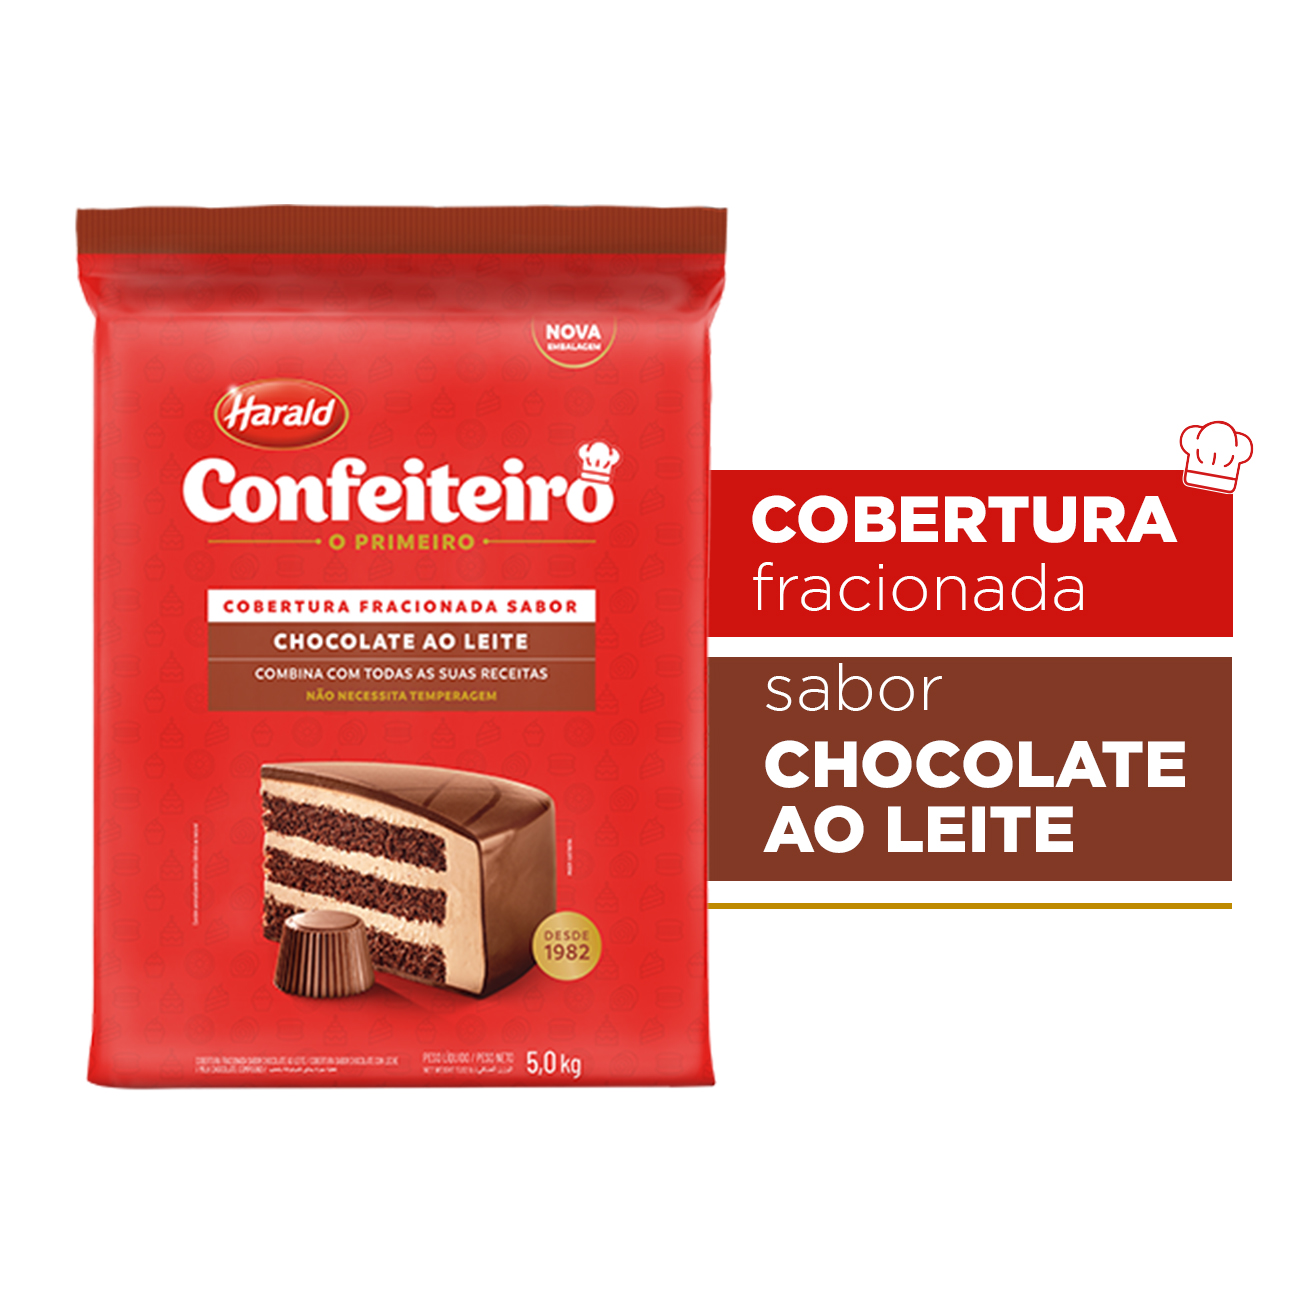 Cobertura de Chocolate em Barra Harald Confeiteiro Fracionada ao Leite 5kg